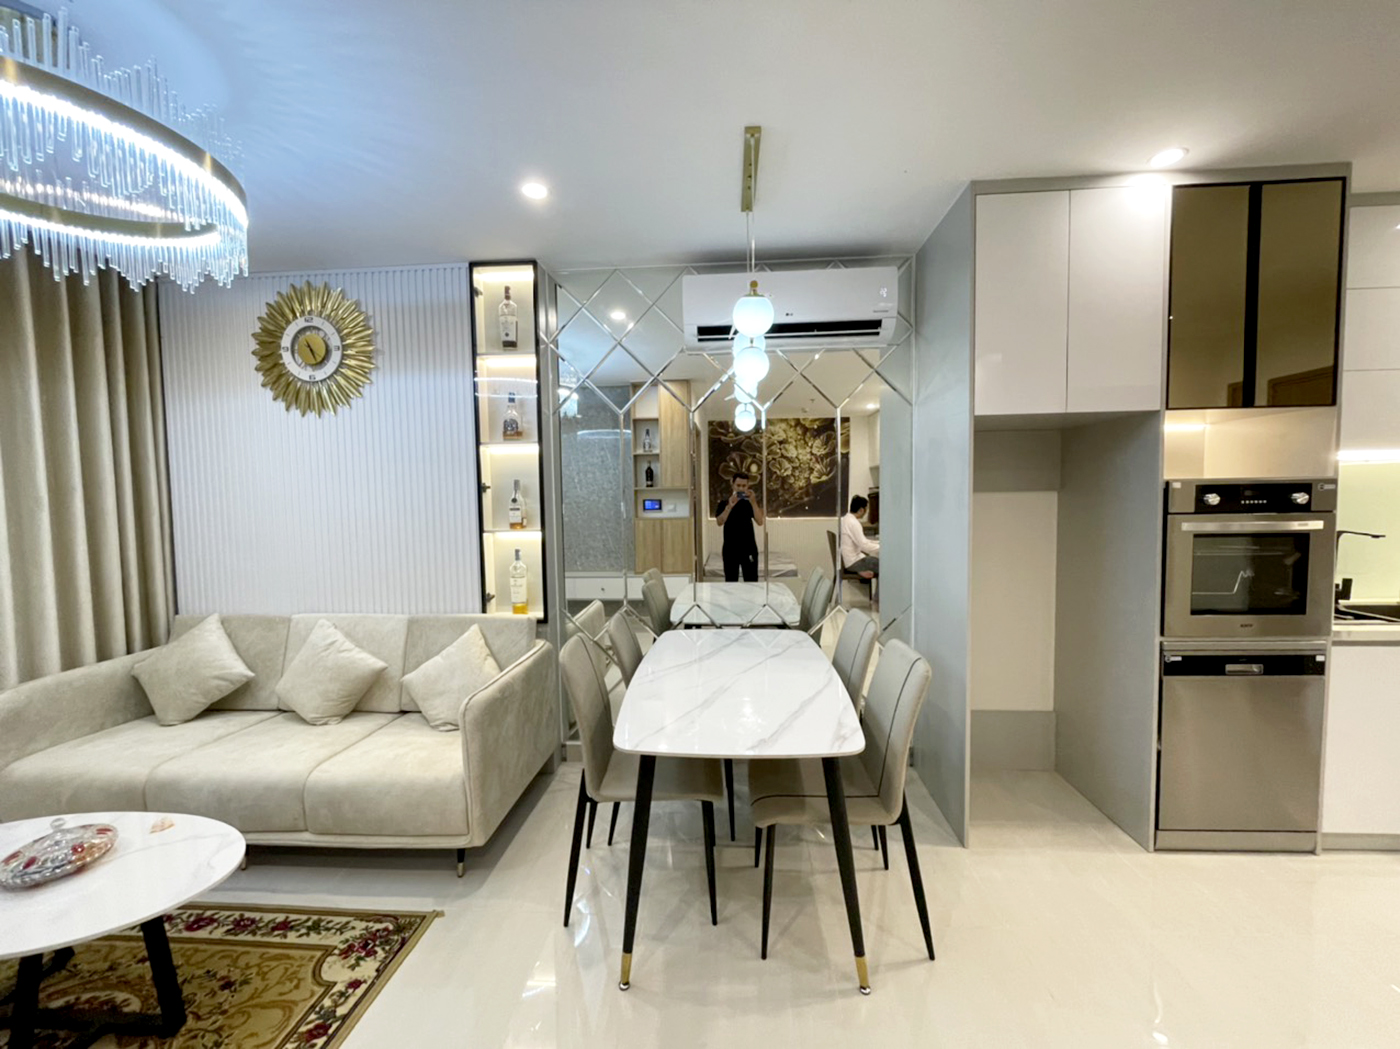 Phòng ăn, phong cách Hiện đại Modern, hoàn thiện nội thất, căn hộ The Origami